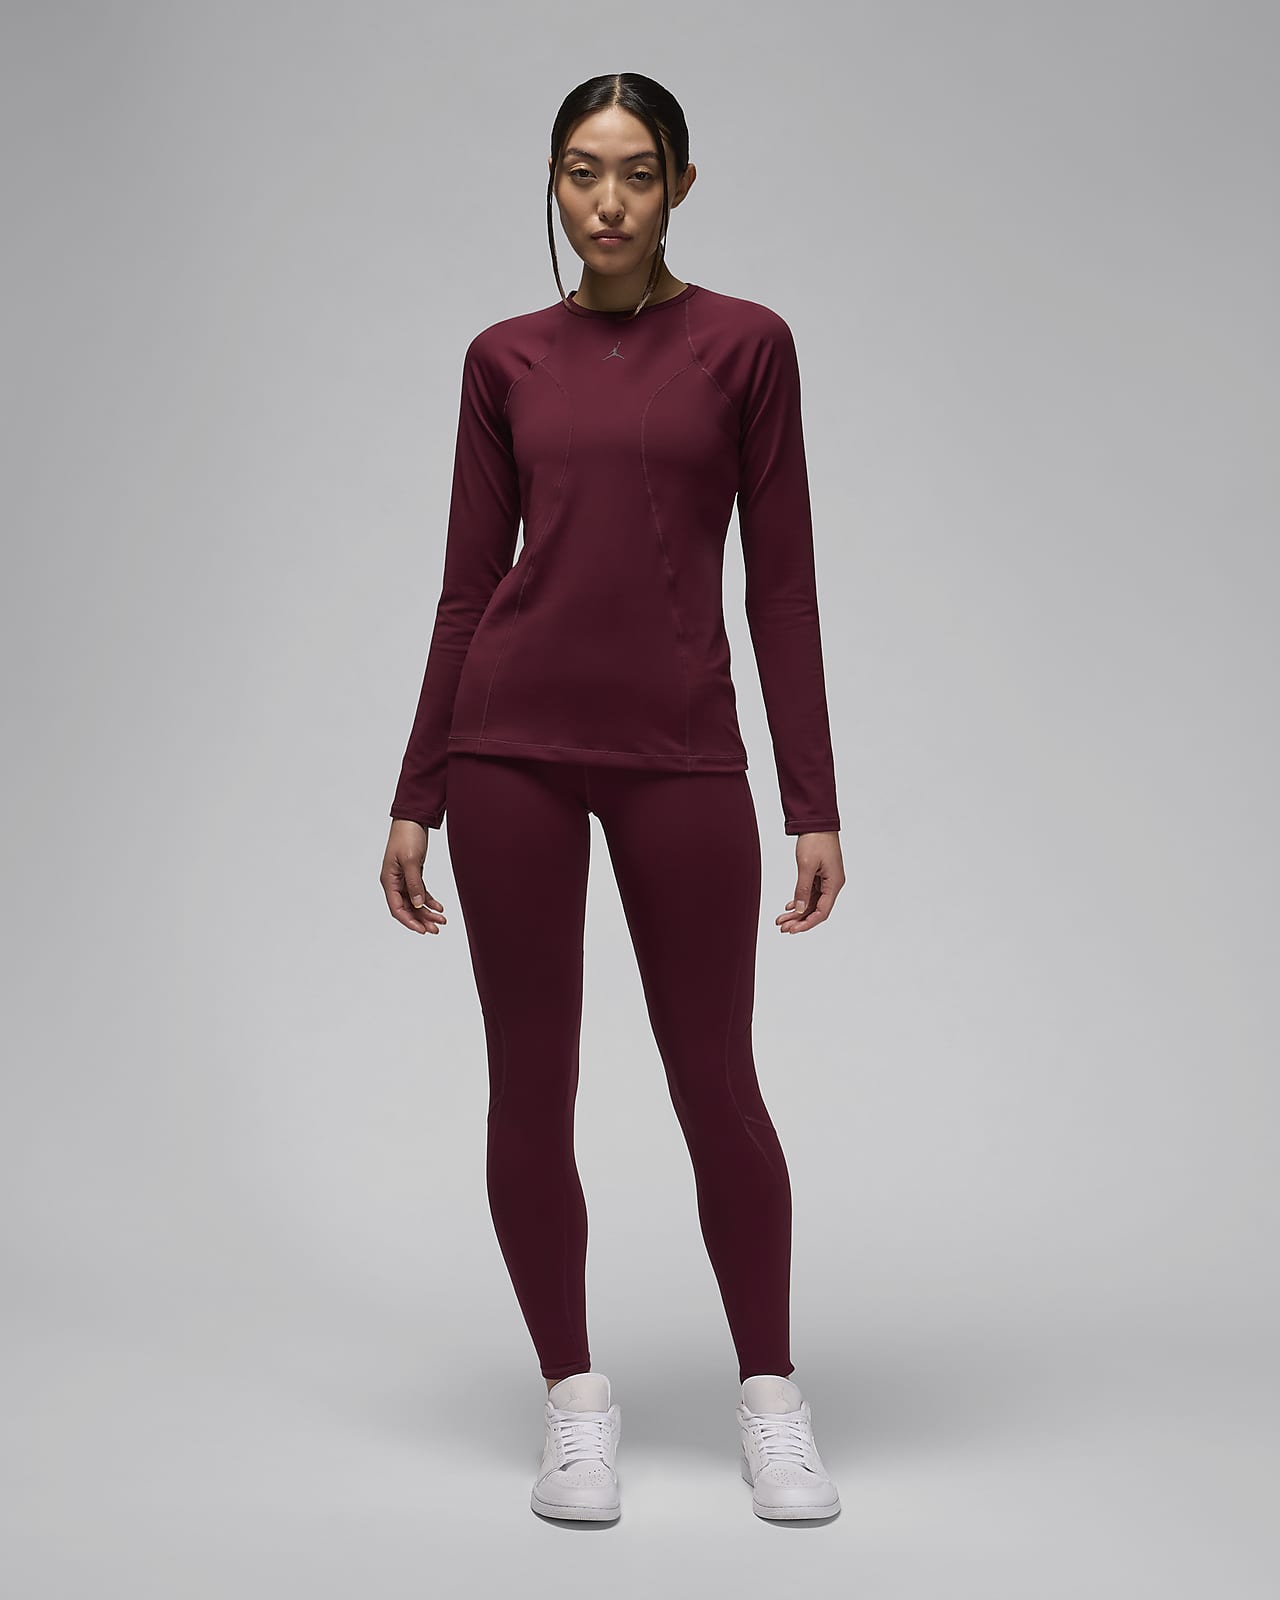 Nike Sportswear Women's Long-Sleeve Top. Nike CA